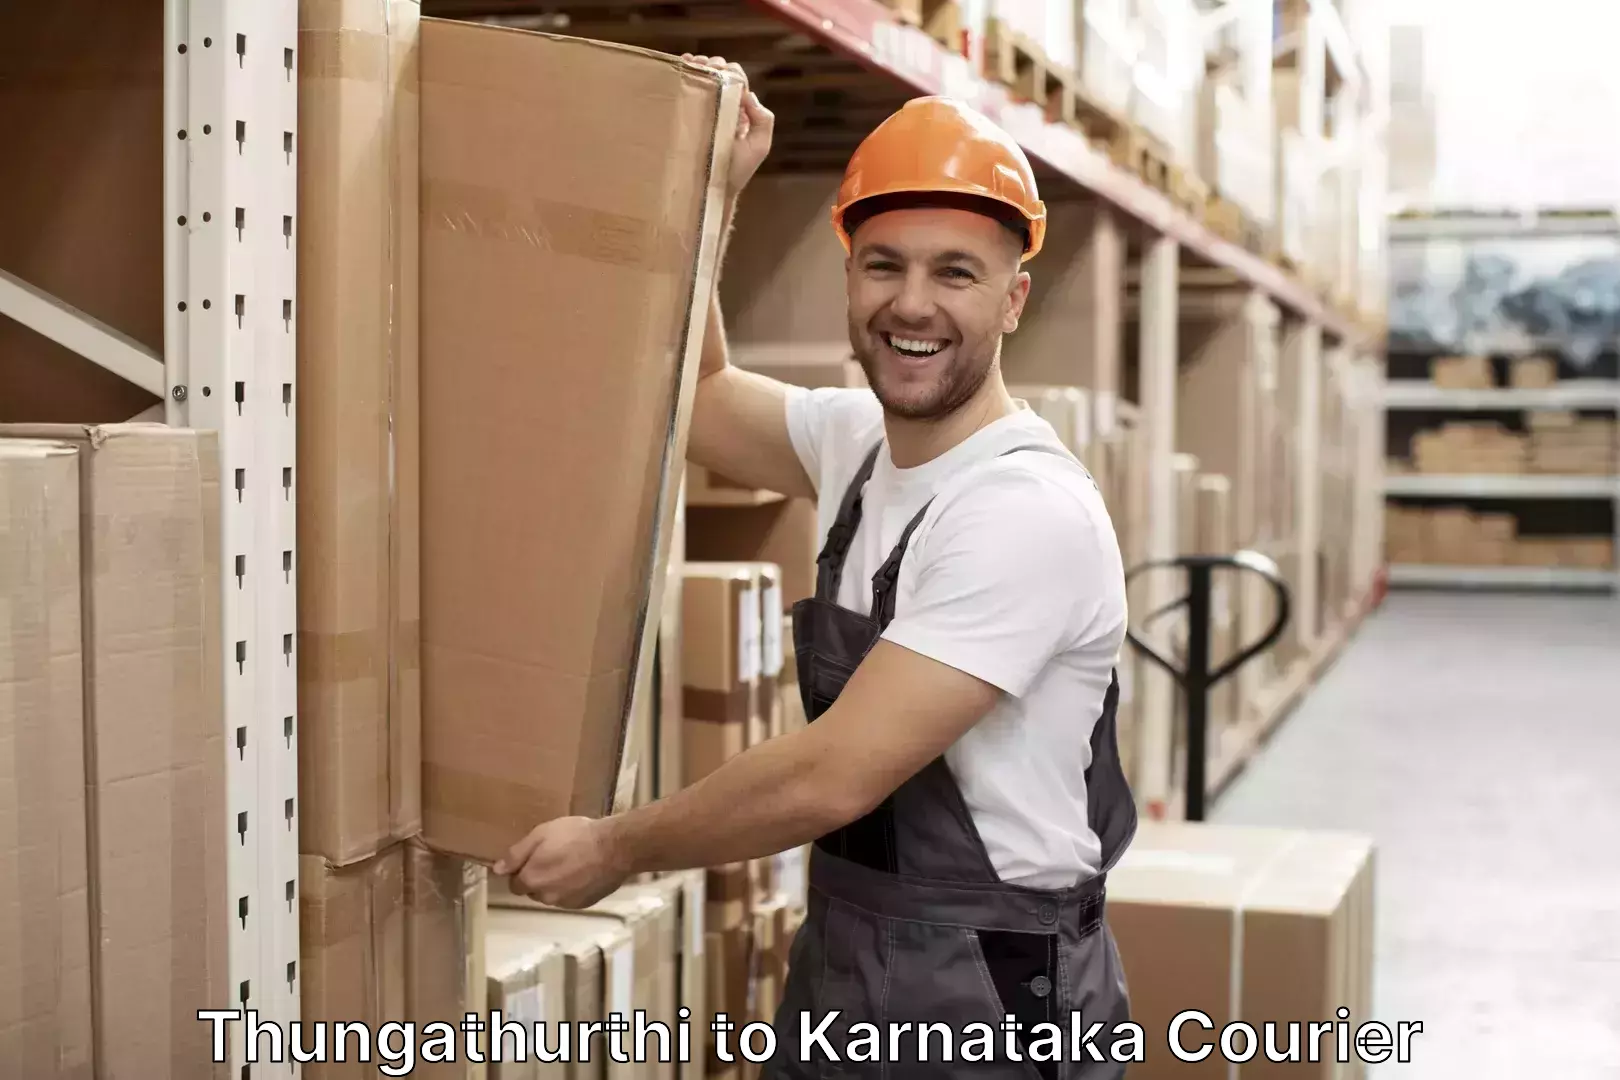 Luggage shipping solutions Thungathurthi to Karnataka